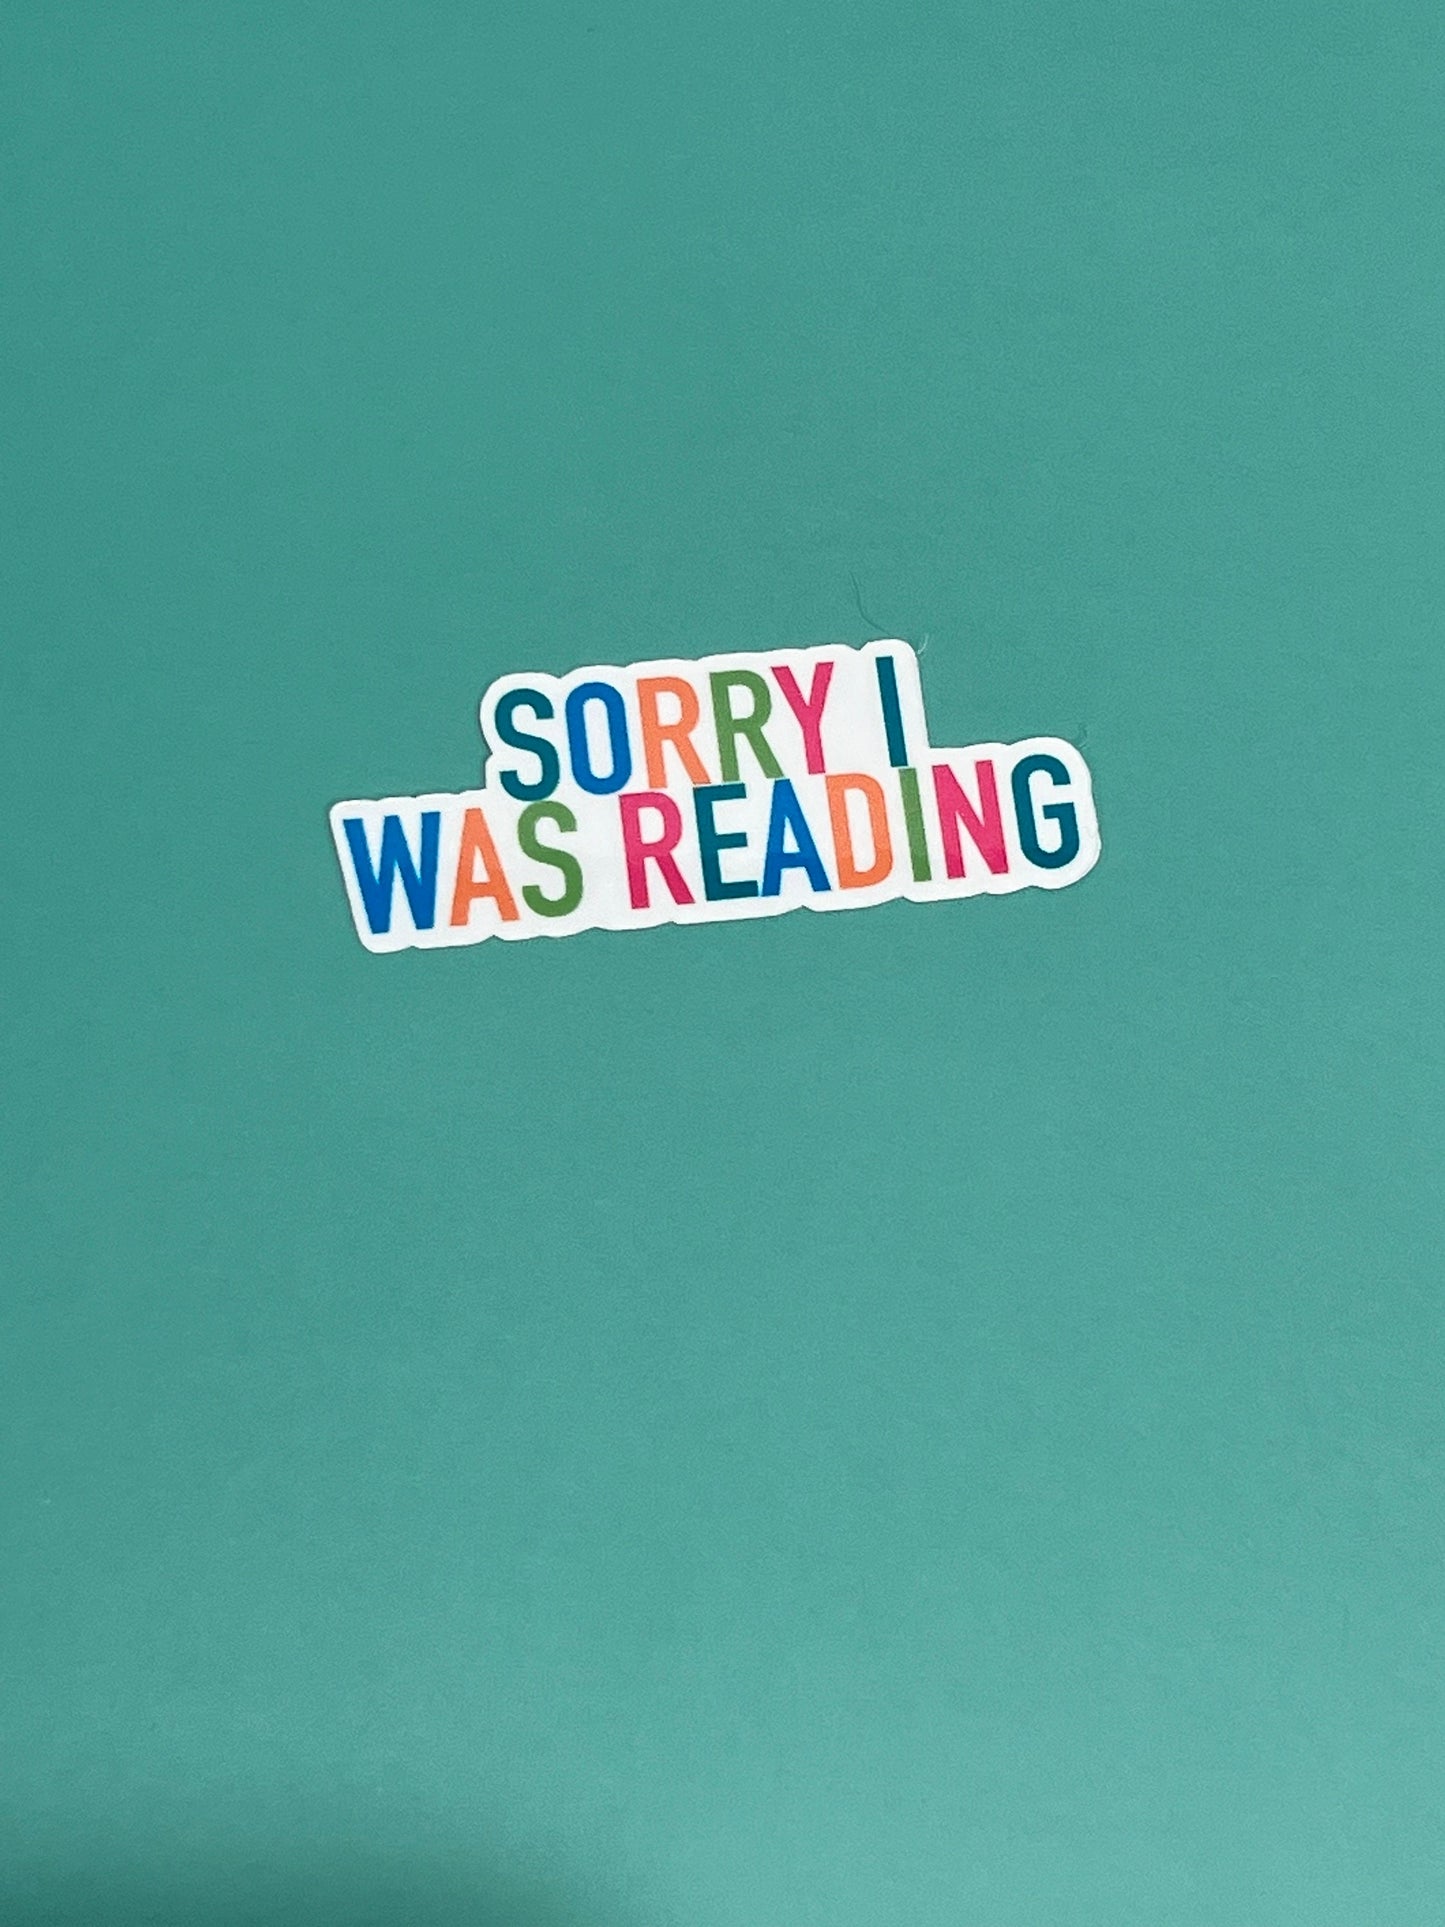 Sorry I Was Reading - Waterproof Sticker